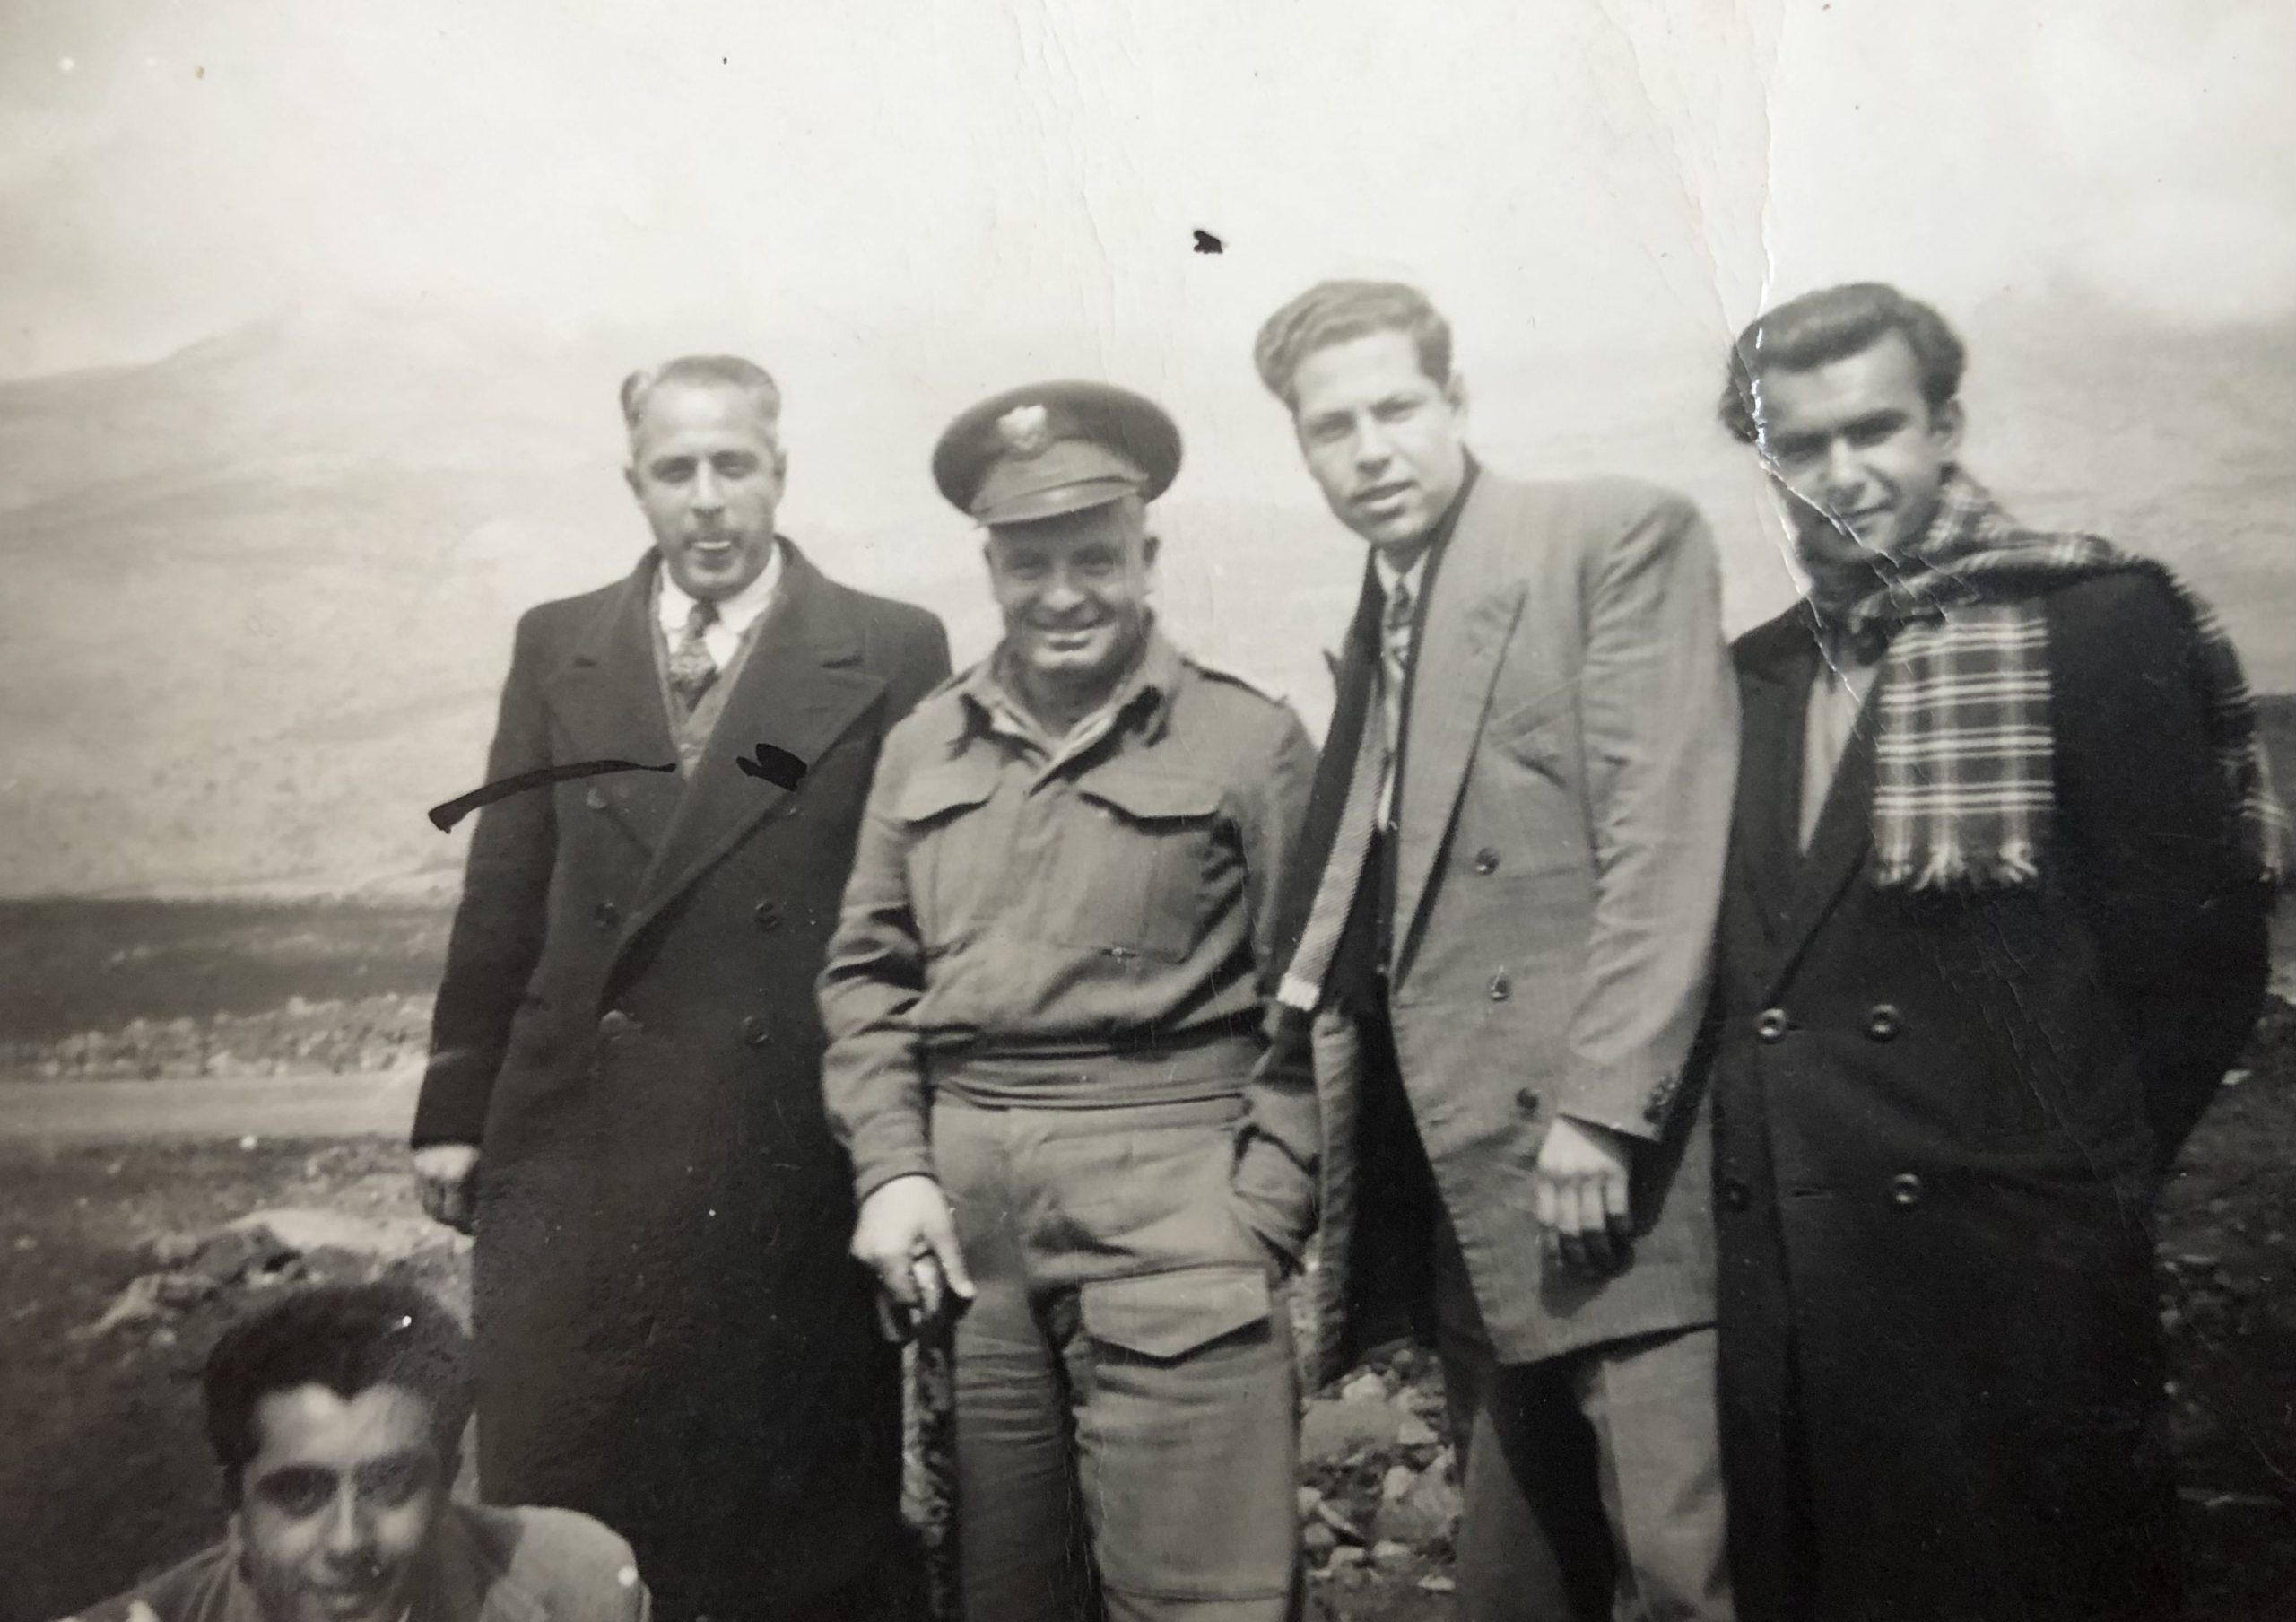 التاريخ السوري المعاصر - جمال الفيصل مع عدد من طلاب وأساتذة الجامعة في الجولان 1948